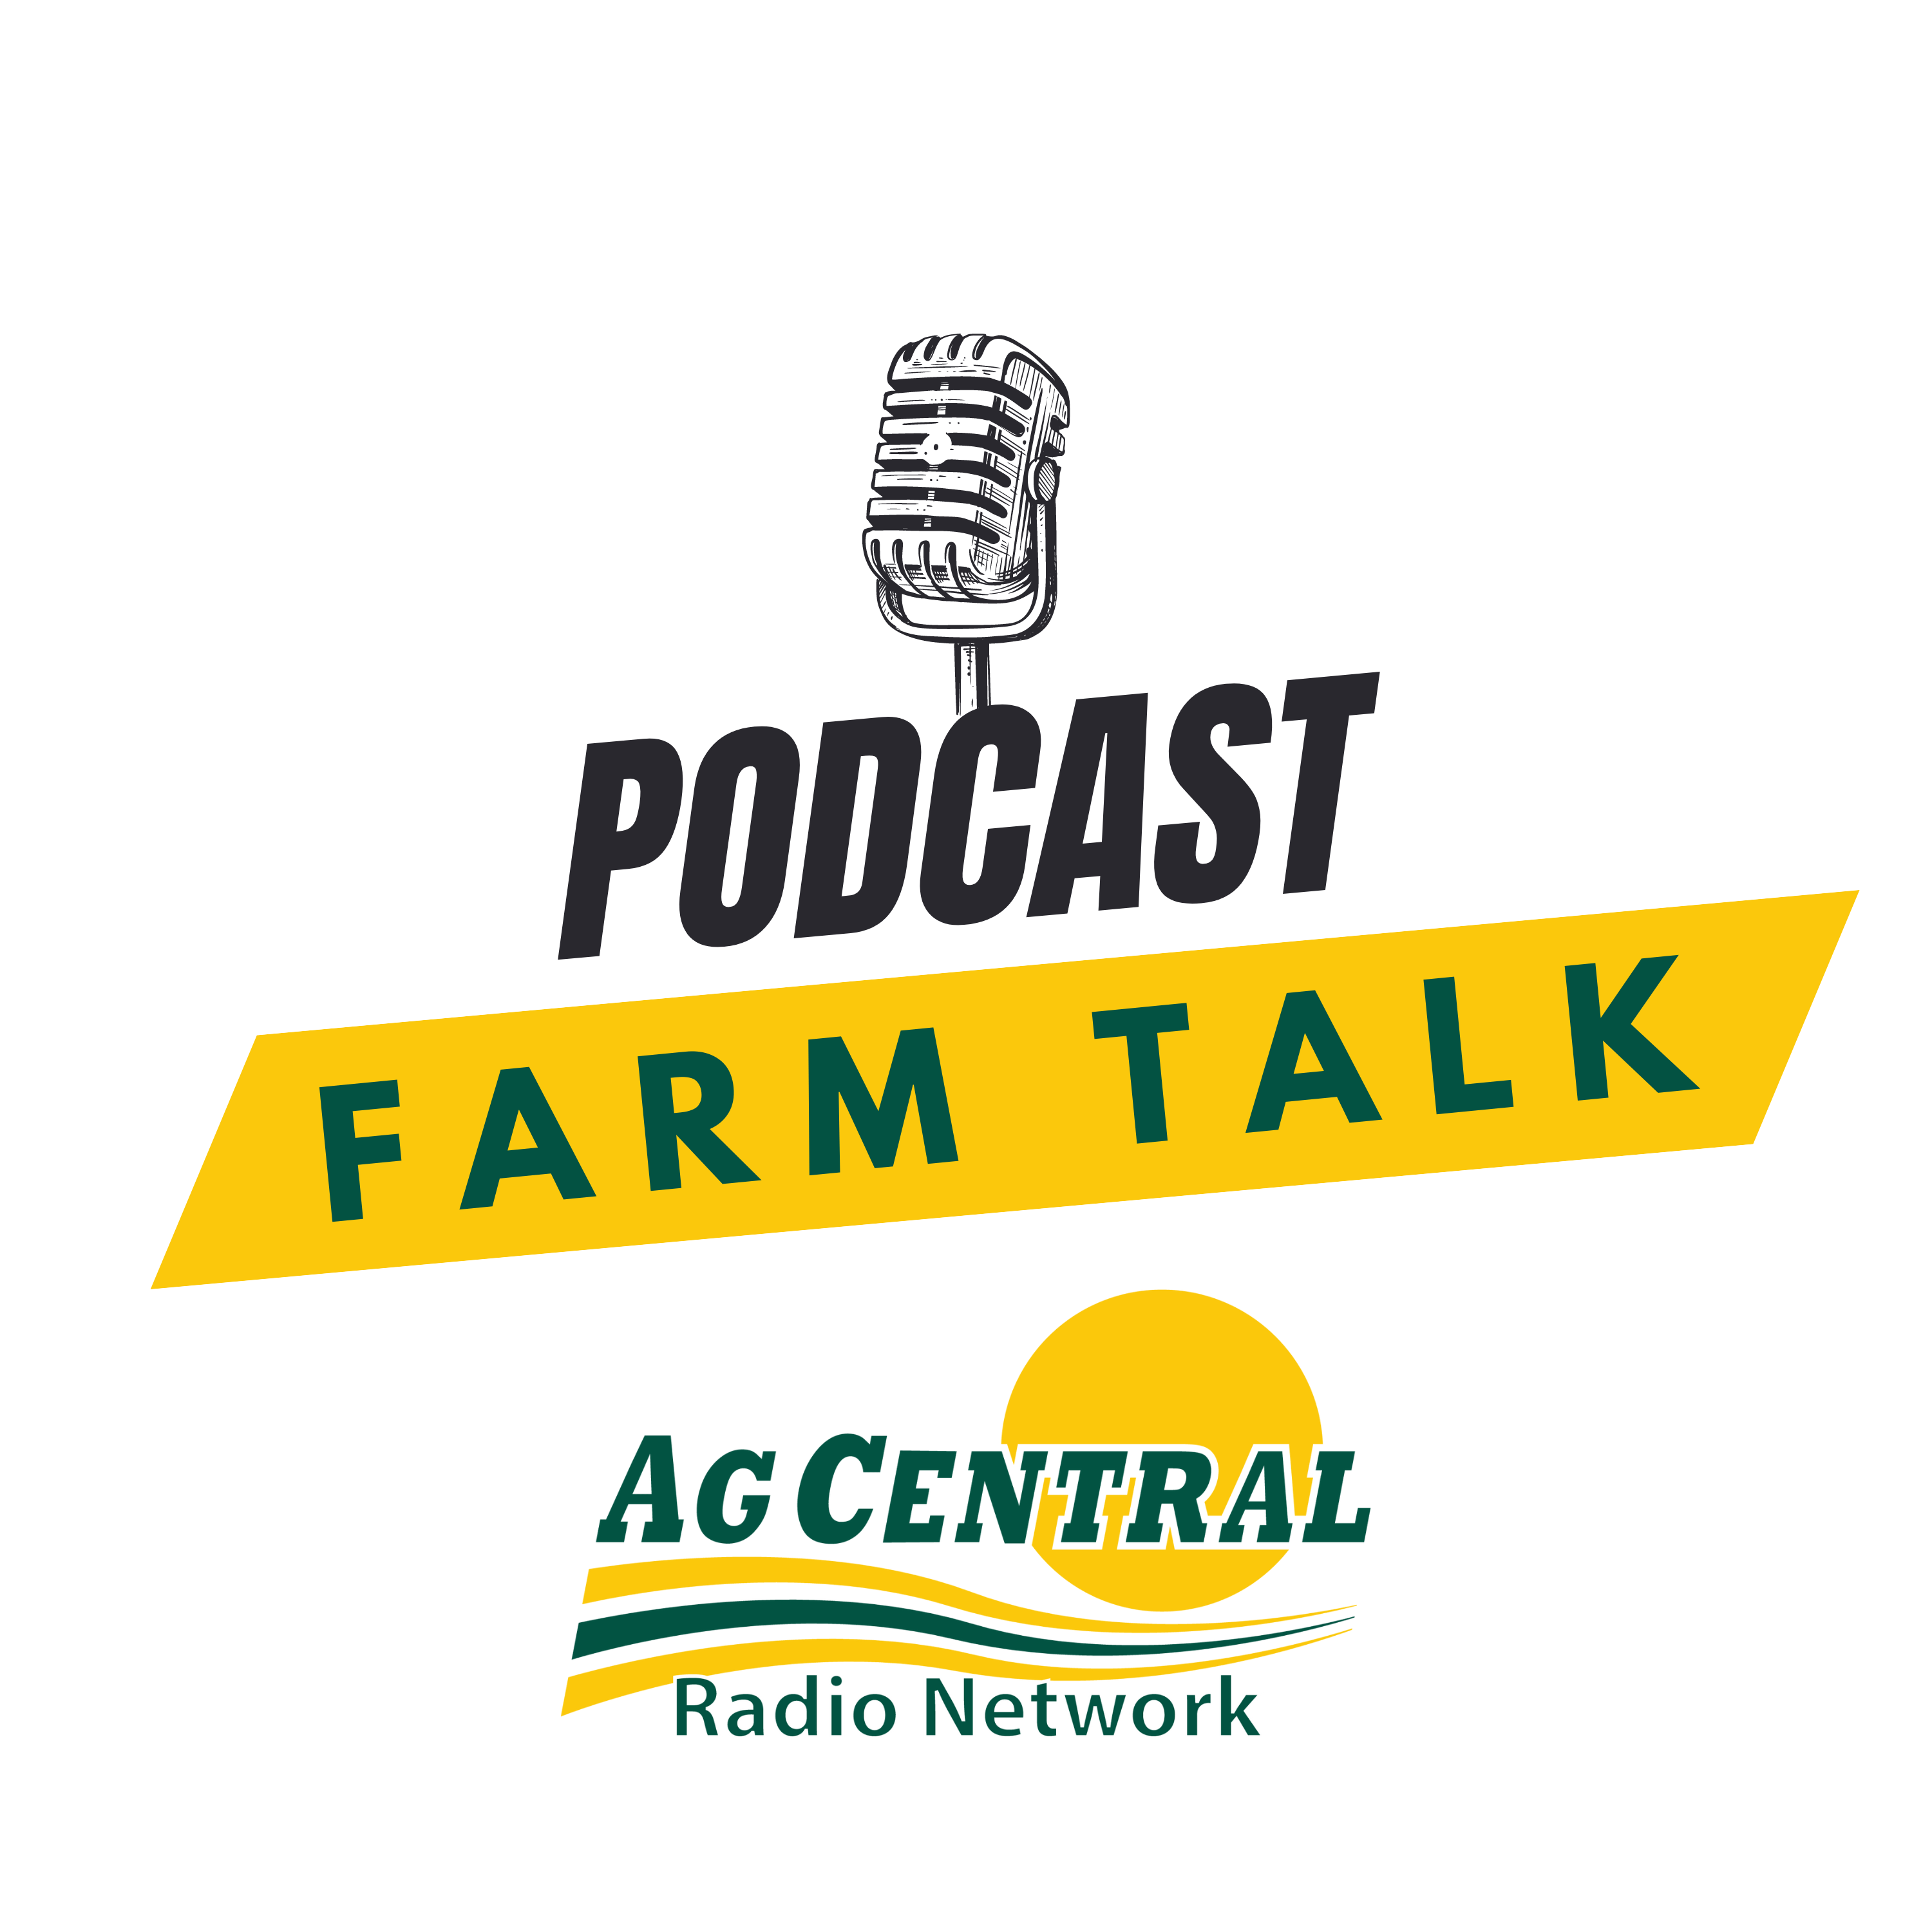 Farm Talk Podcasts